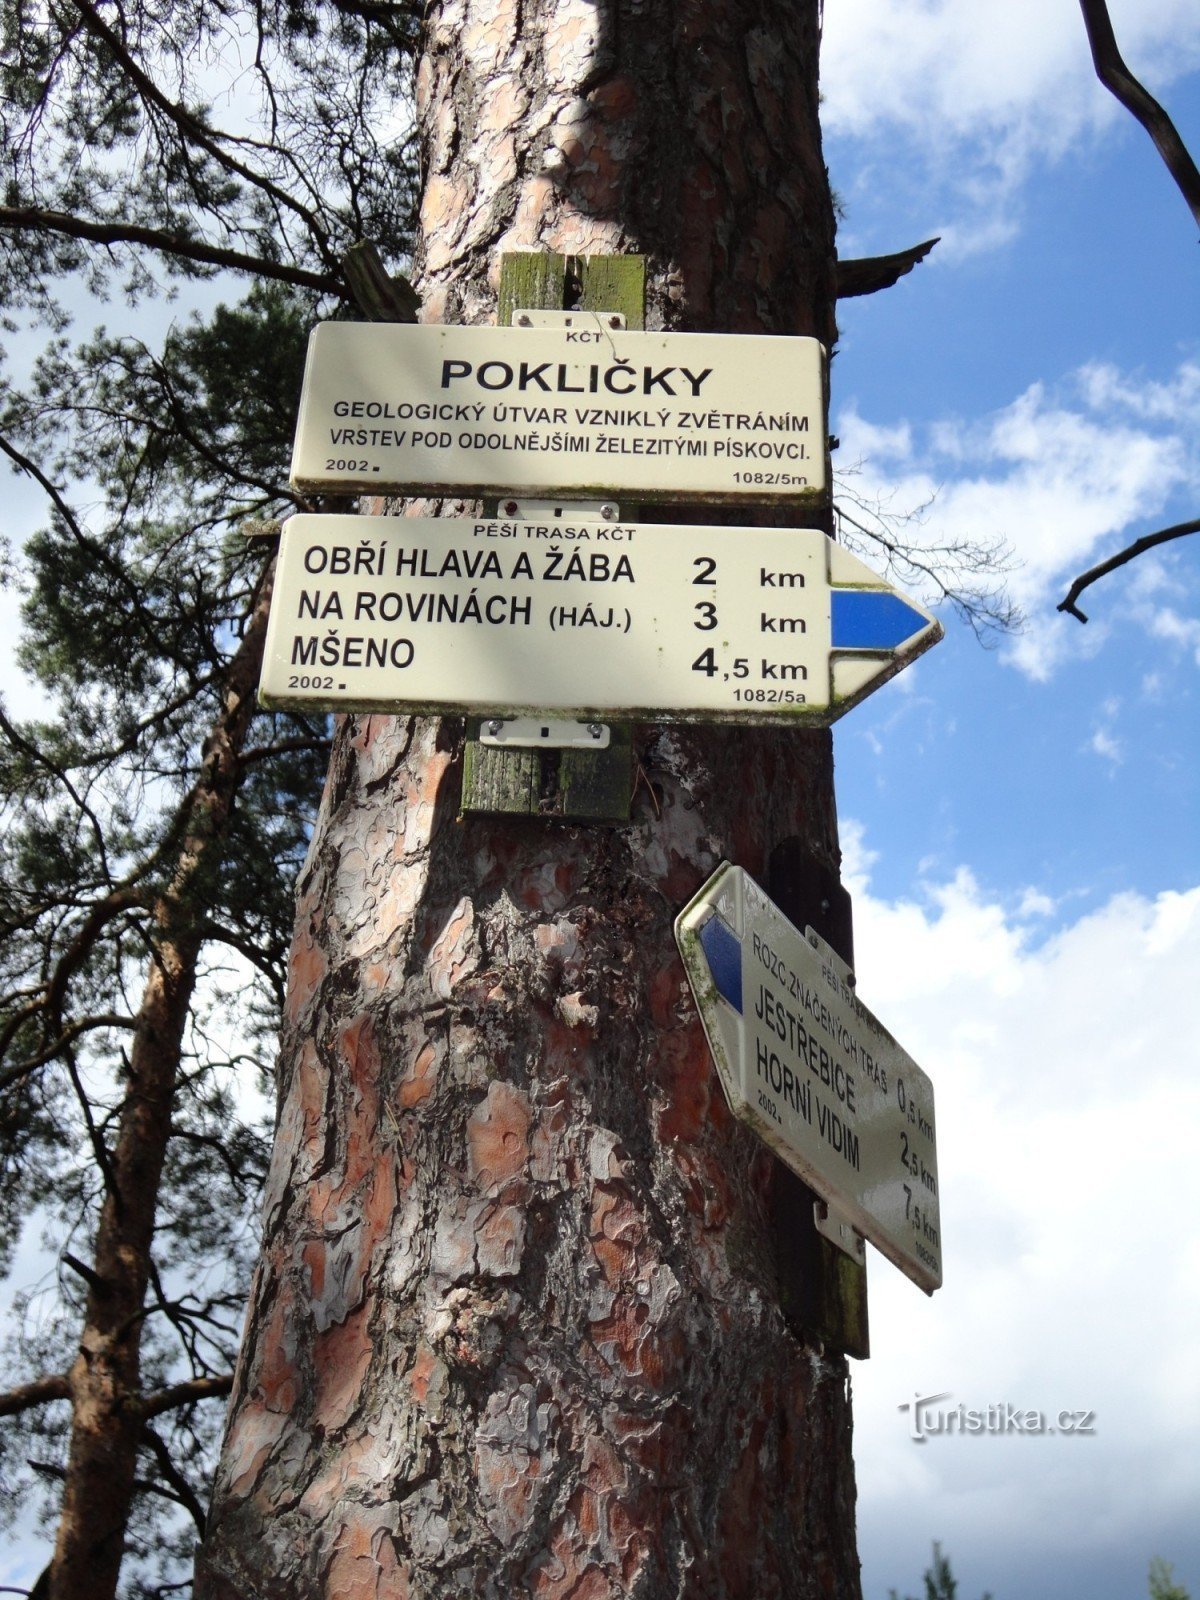 Pokličky turisztikai csomópont - felső csomópont Pokličekben